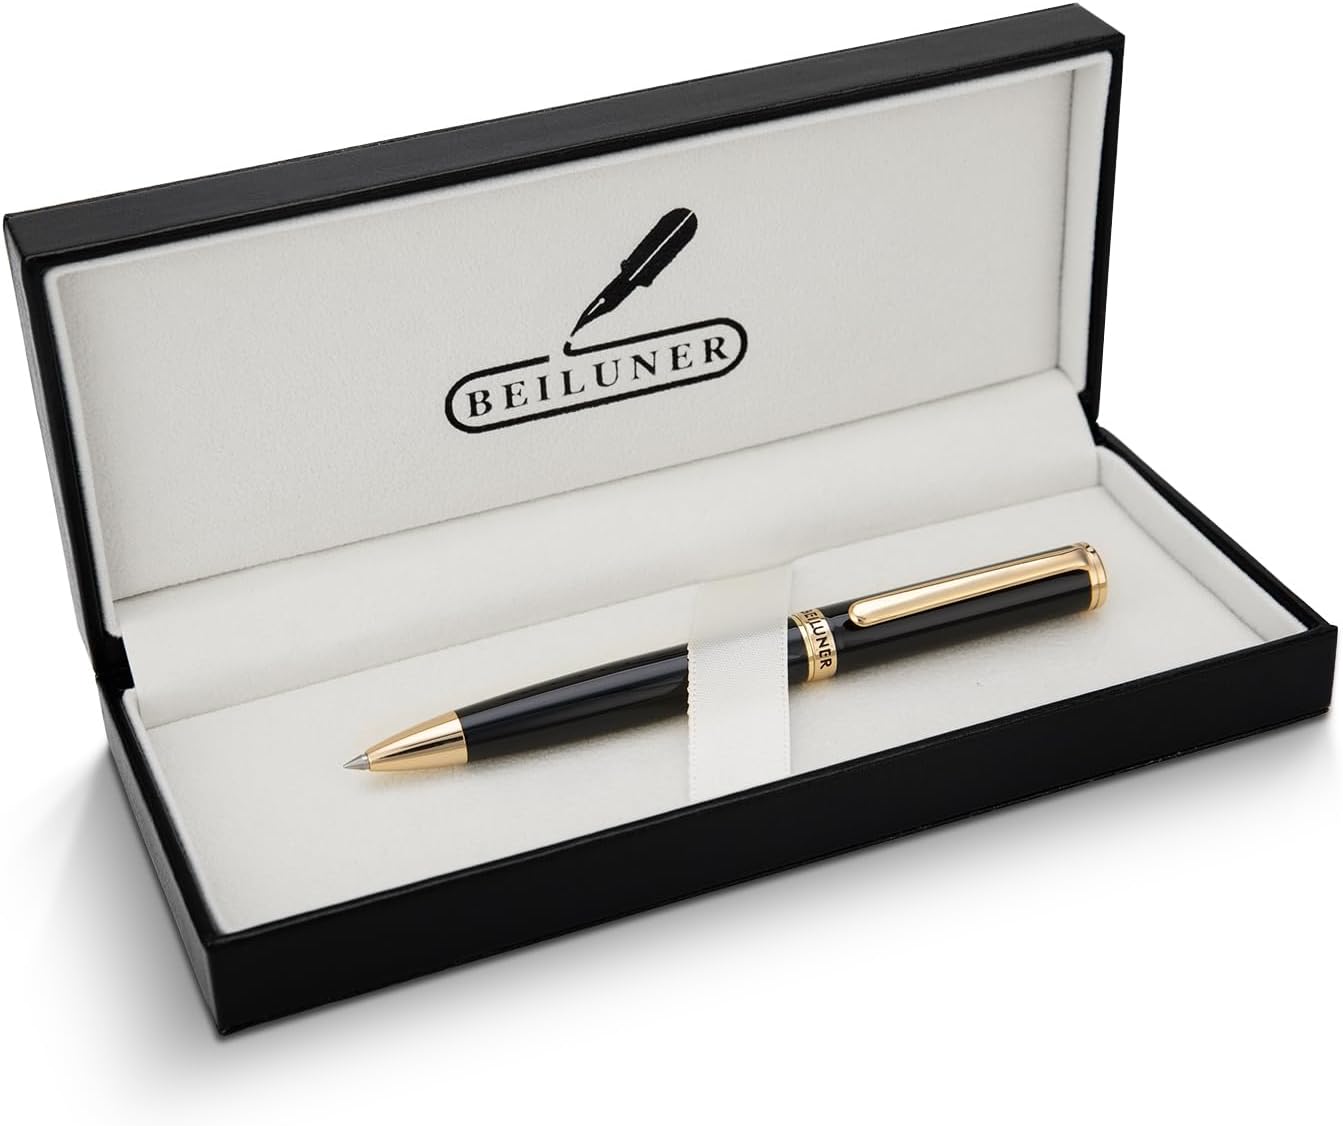 BEILUNER Luxury Ballpoint Pen Set - 24K Gold Trim, Schneider Refill, Gift Box